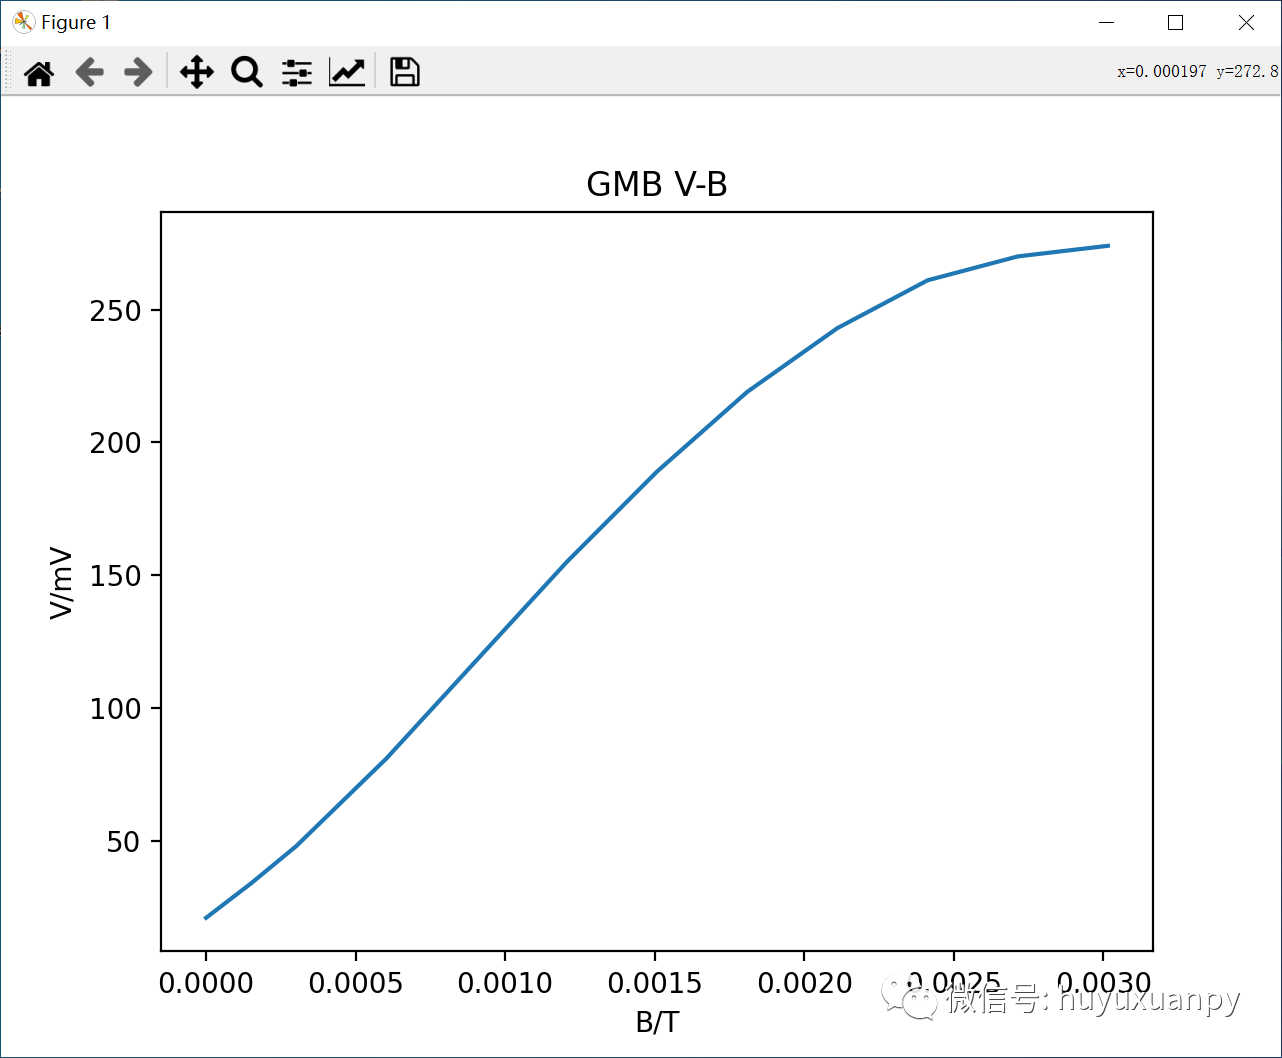 利用Python Matlab绘制曲线图的实例分析